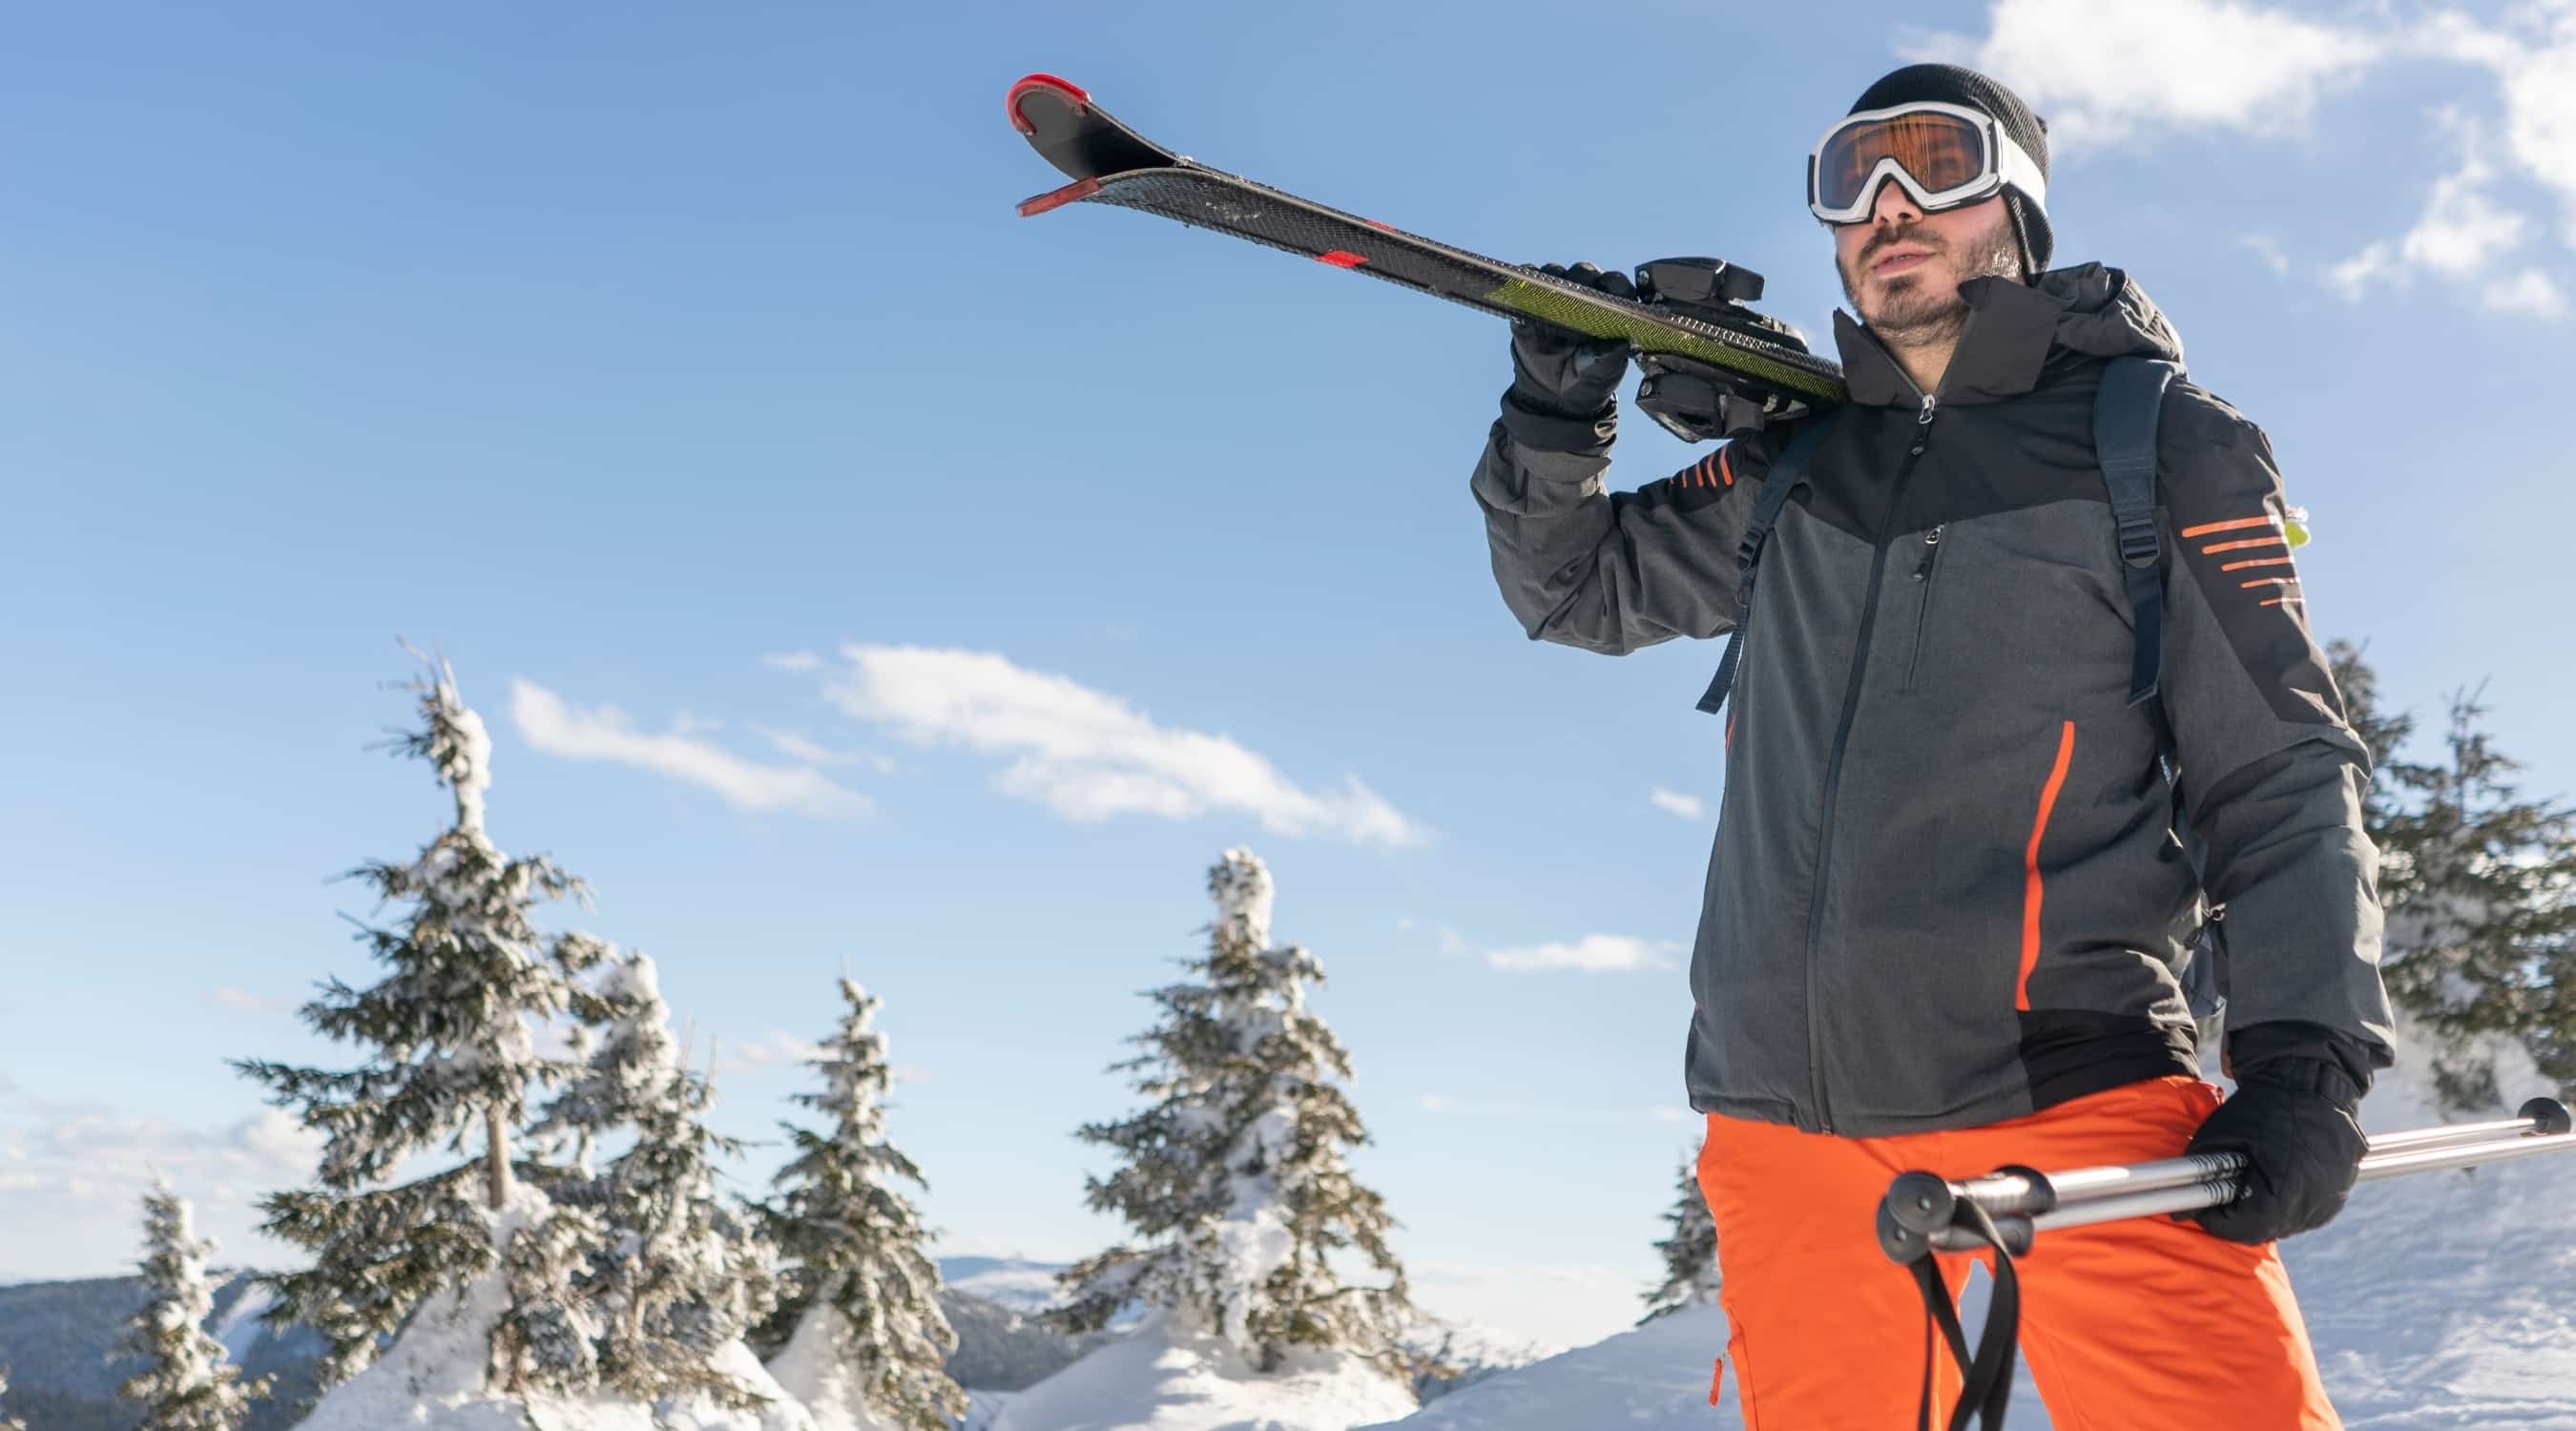 Skijacken Herren - Welche benötigen Jacke was Sie für